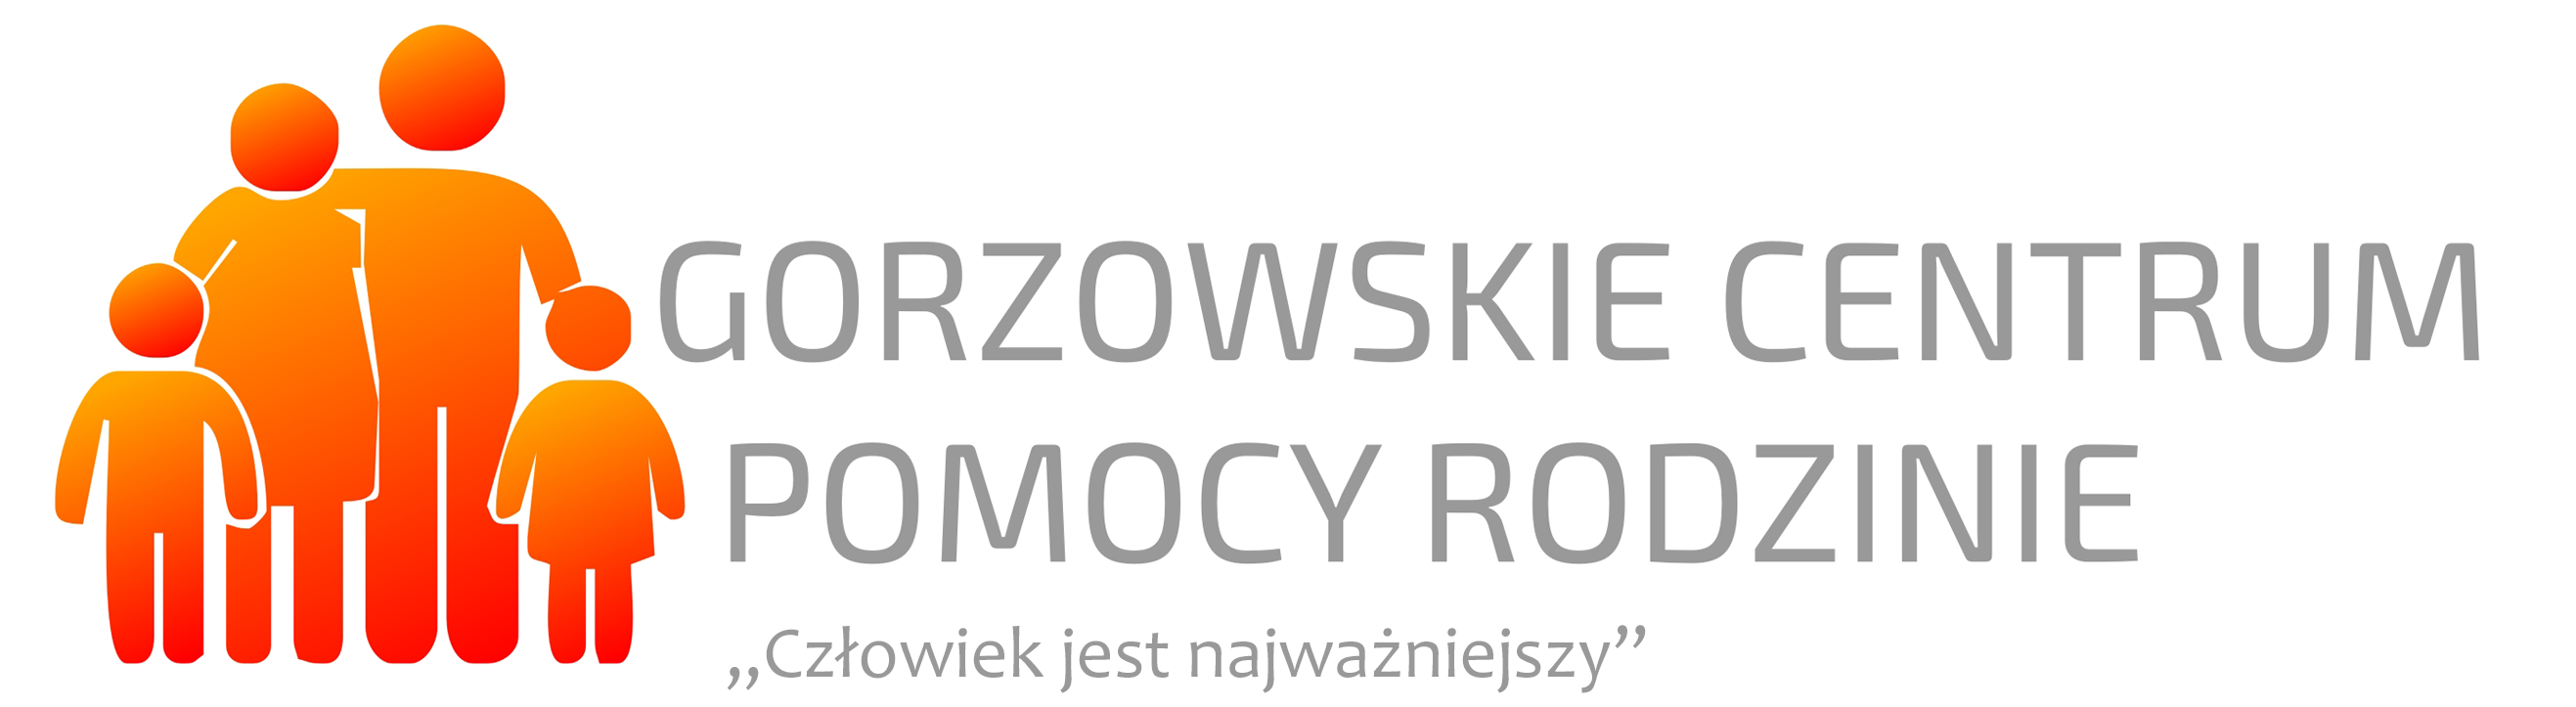 Gorzowskie Centrum Pomocy Rodzinie